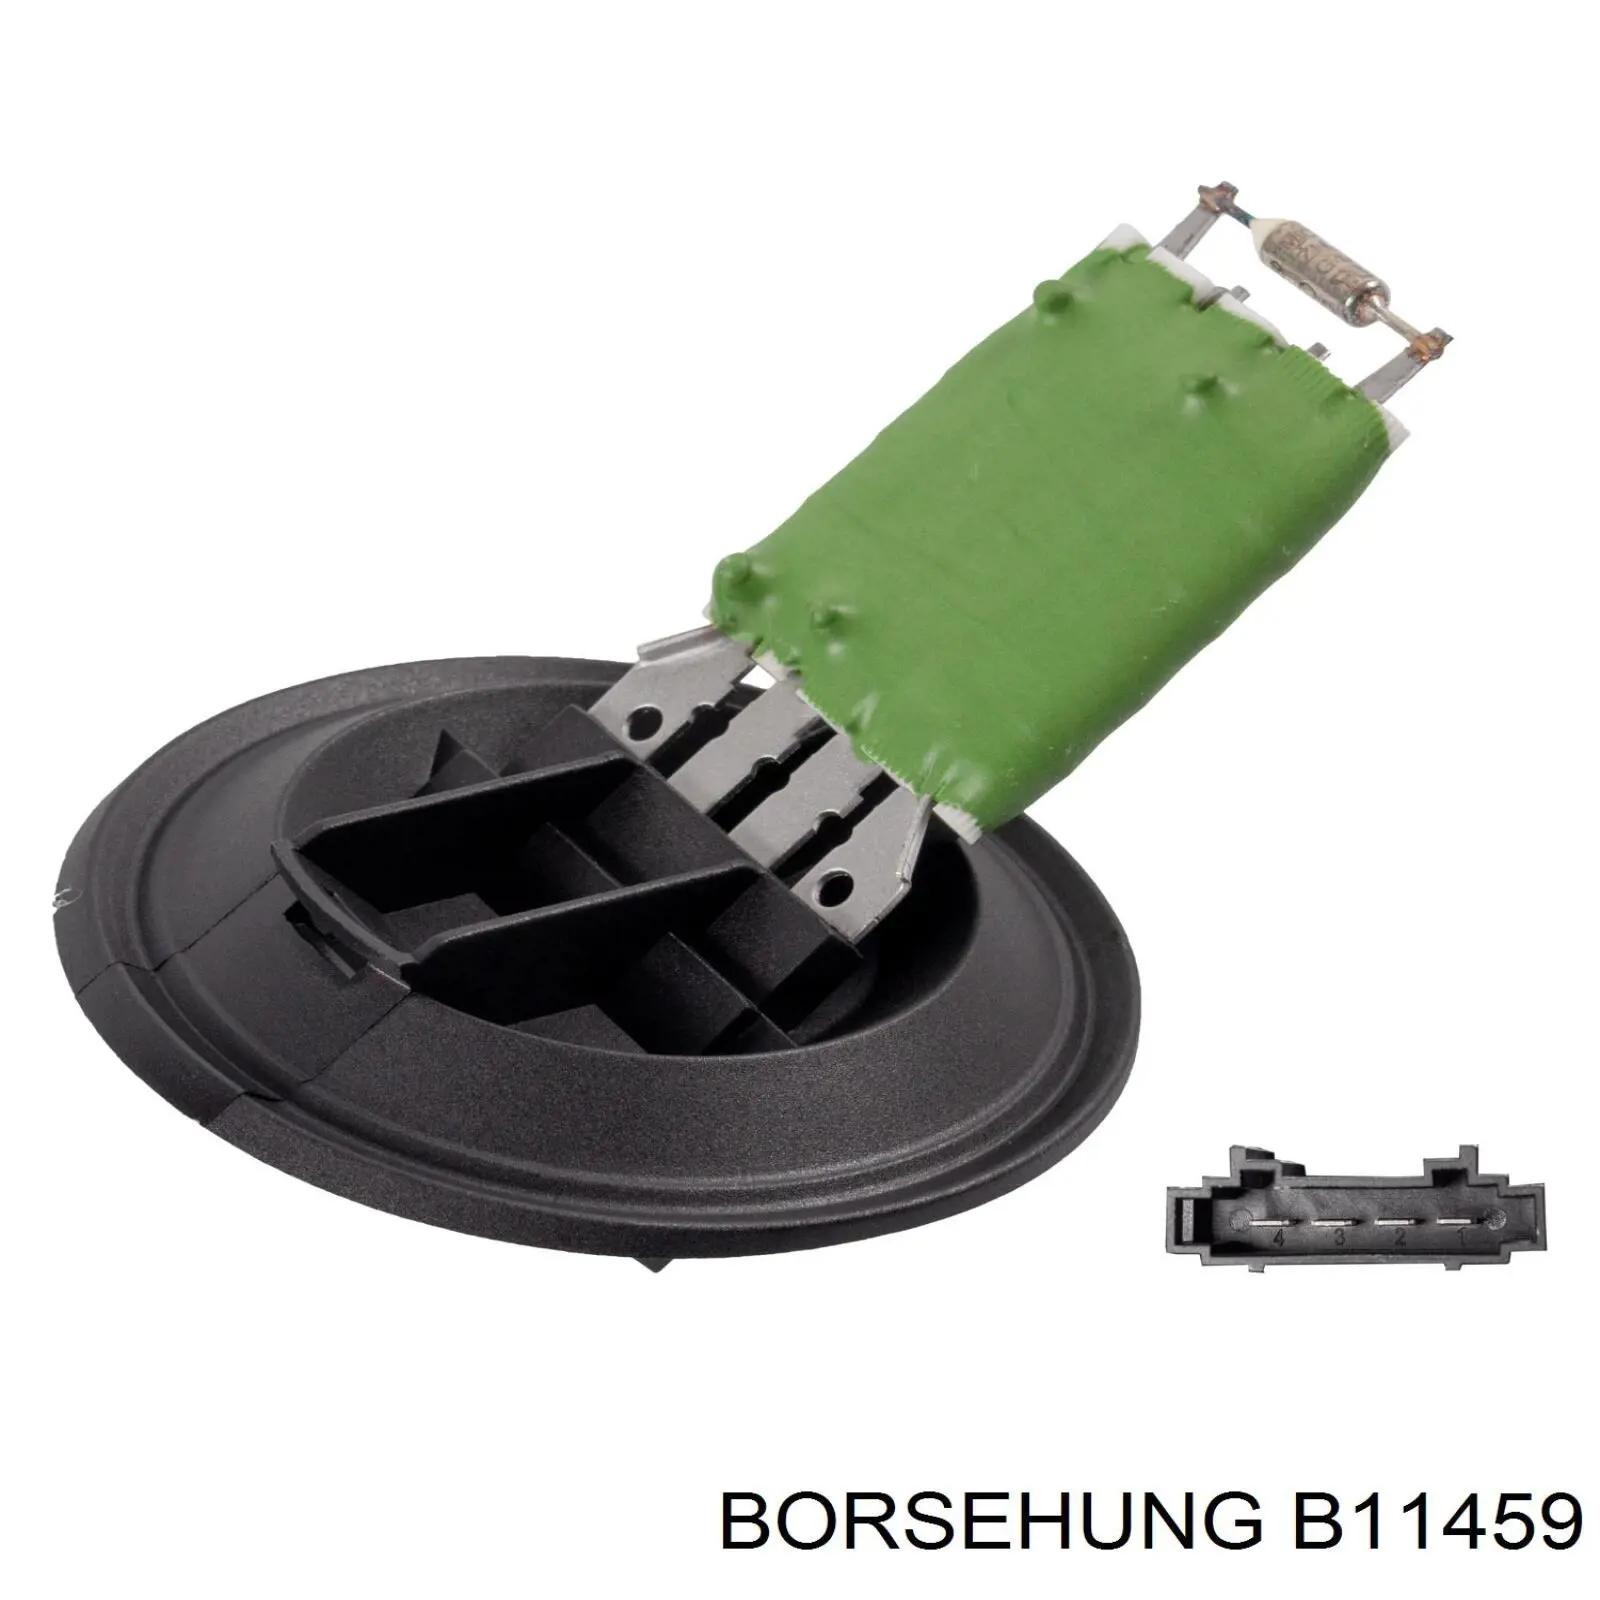 B11459 Borsehung resistencia de calefacción